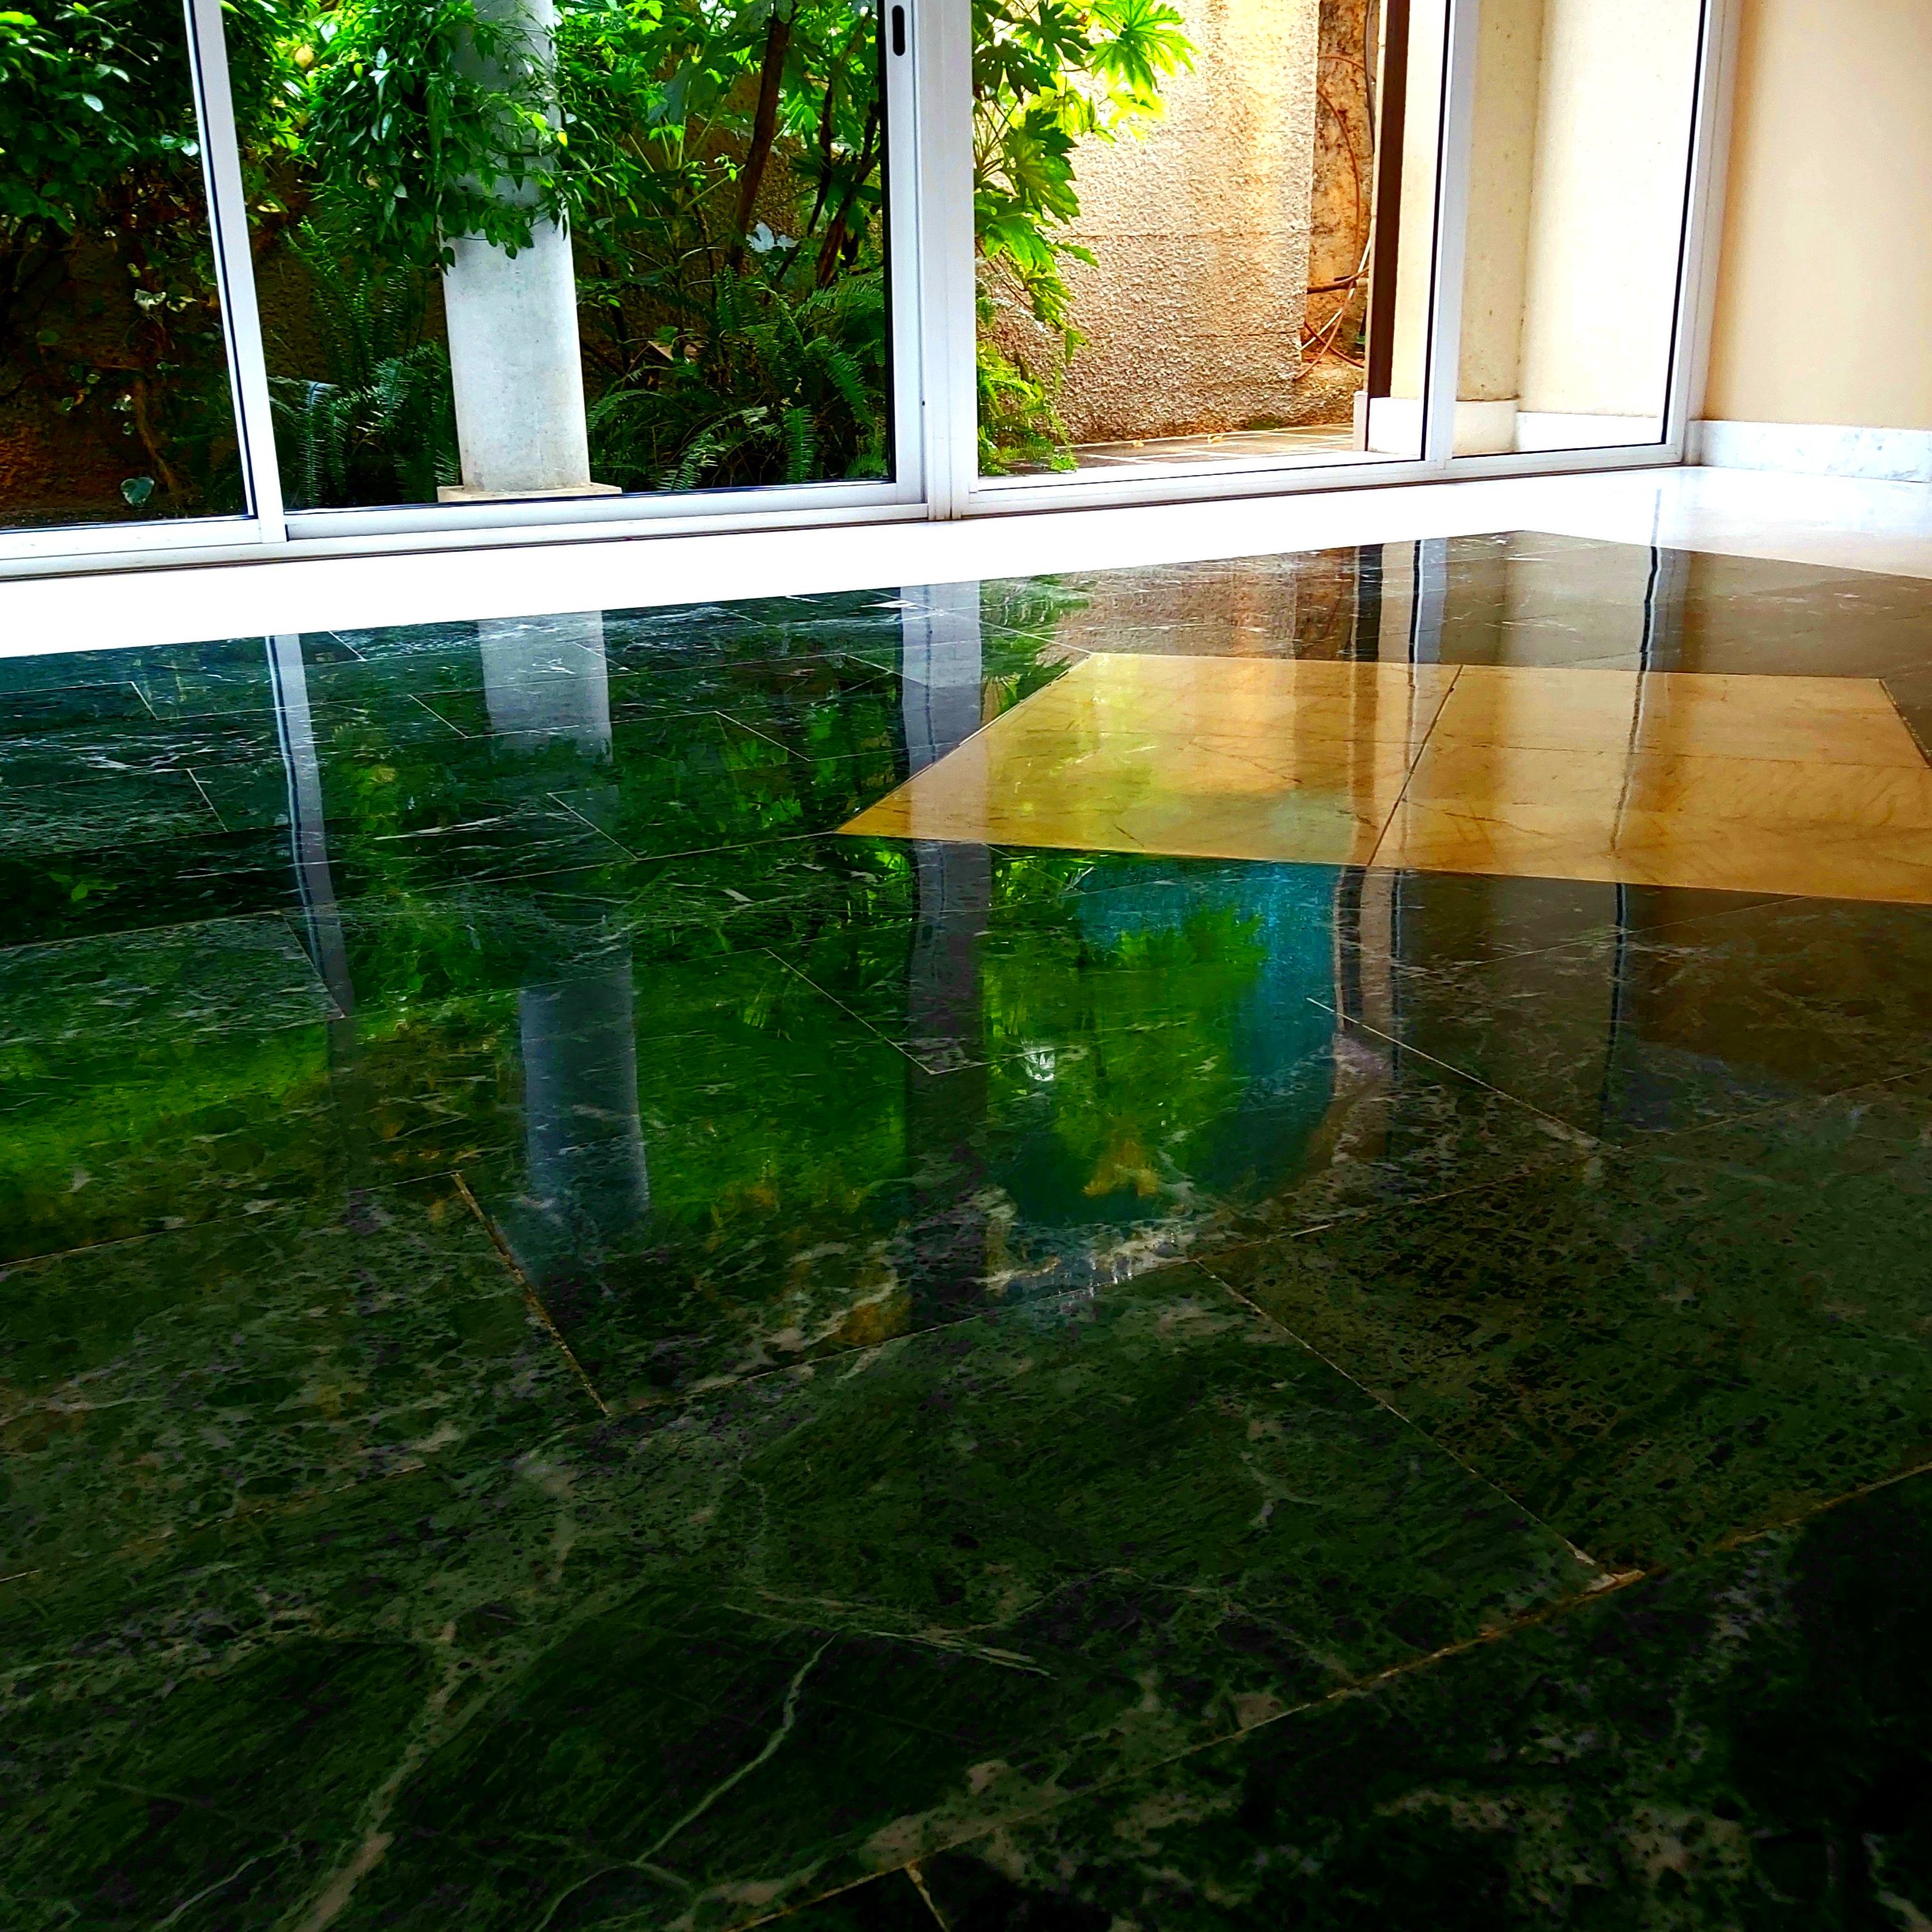 Decapado abrillantado de suelo de marmol verde. Entrada de una comunidad en Palma de Mallorca.